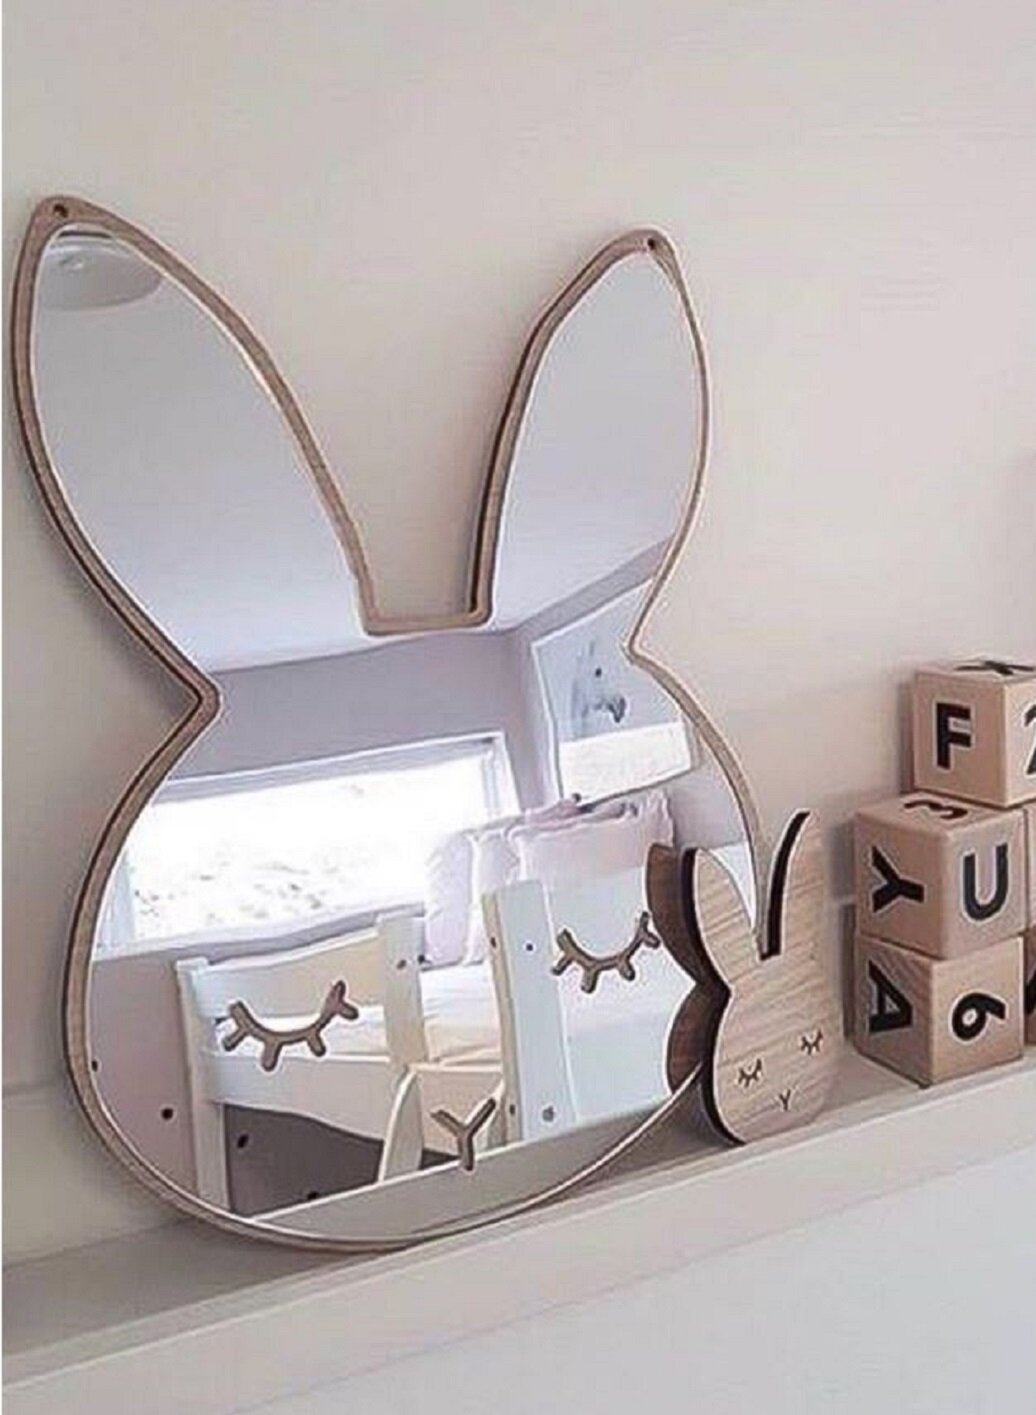 Bunny mirror